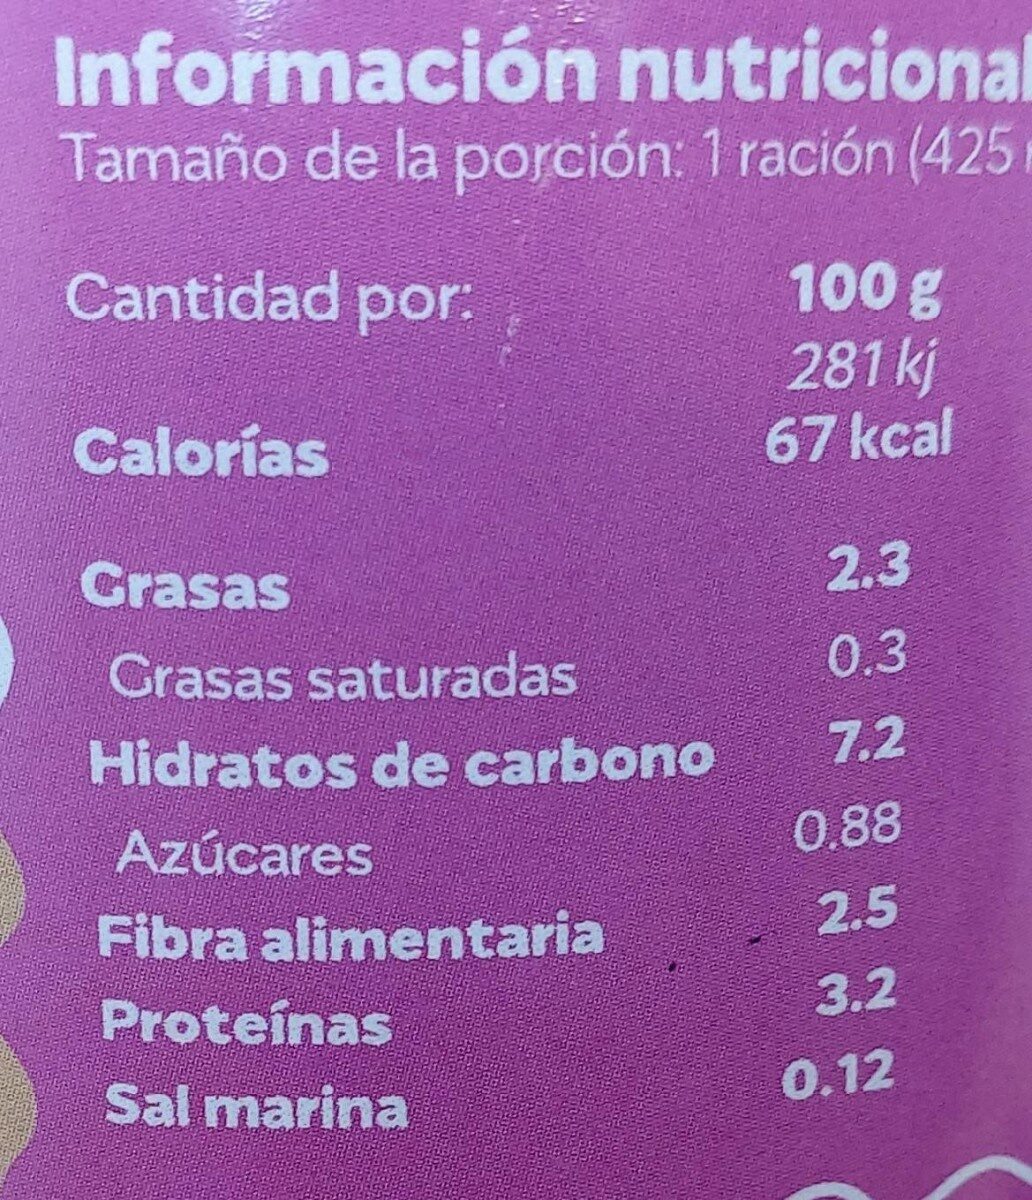 Crema de legumbres - Informació nutricional - es